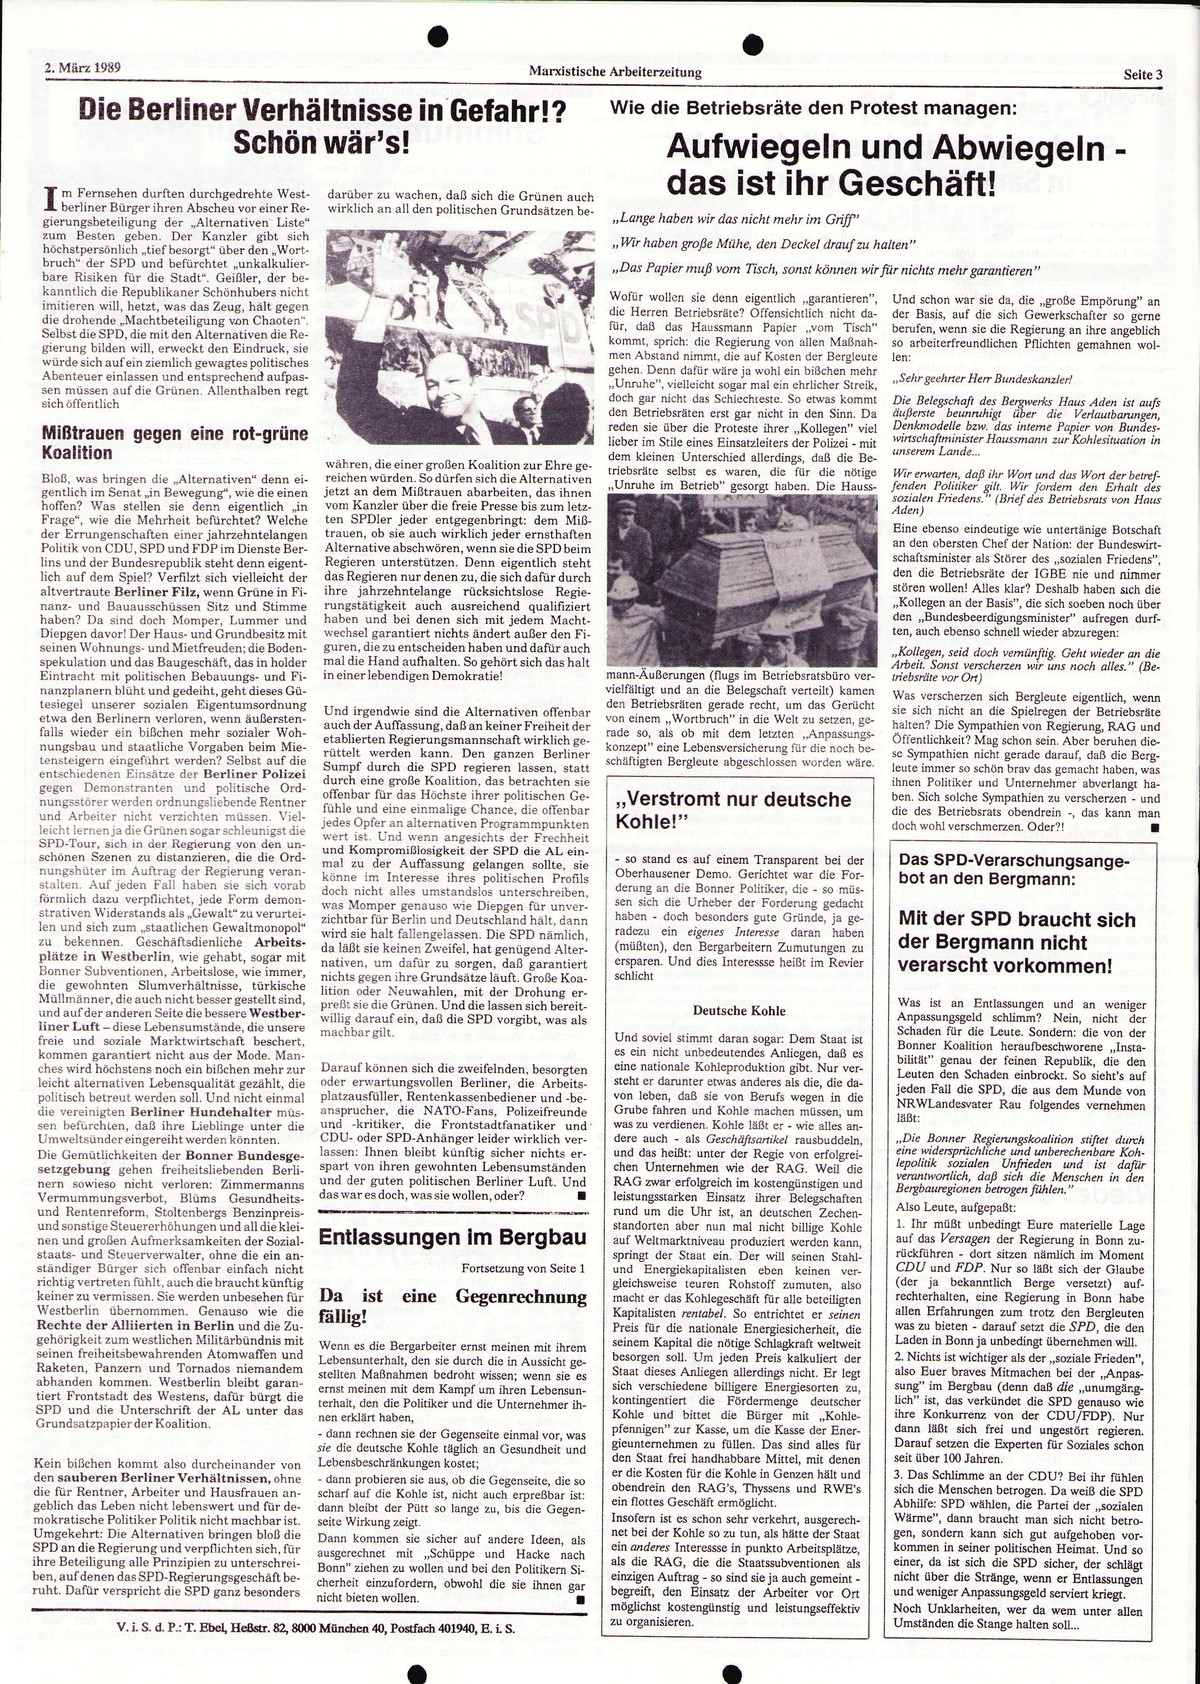 Ruhrgebiet_MG_Marxistische_Arbeiterzeitung_Chemie_19890302_003